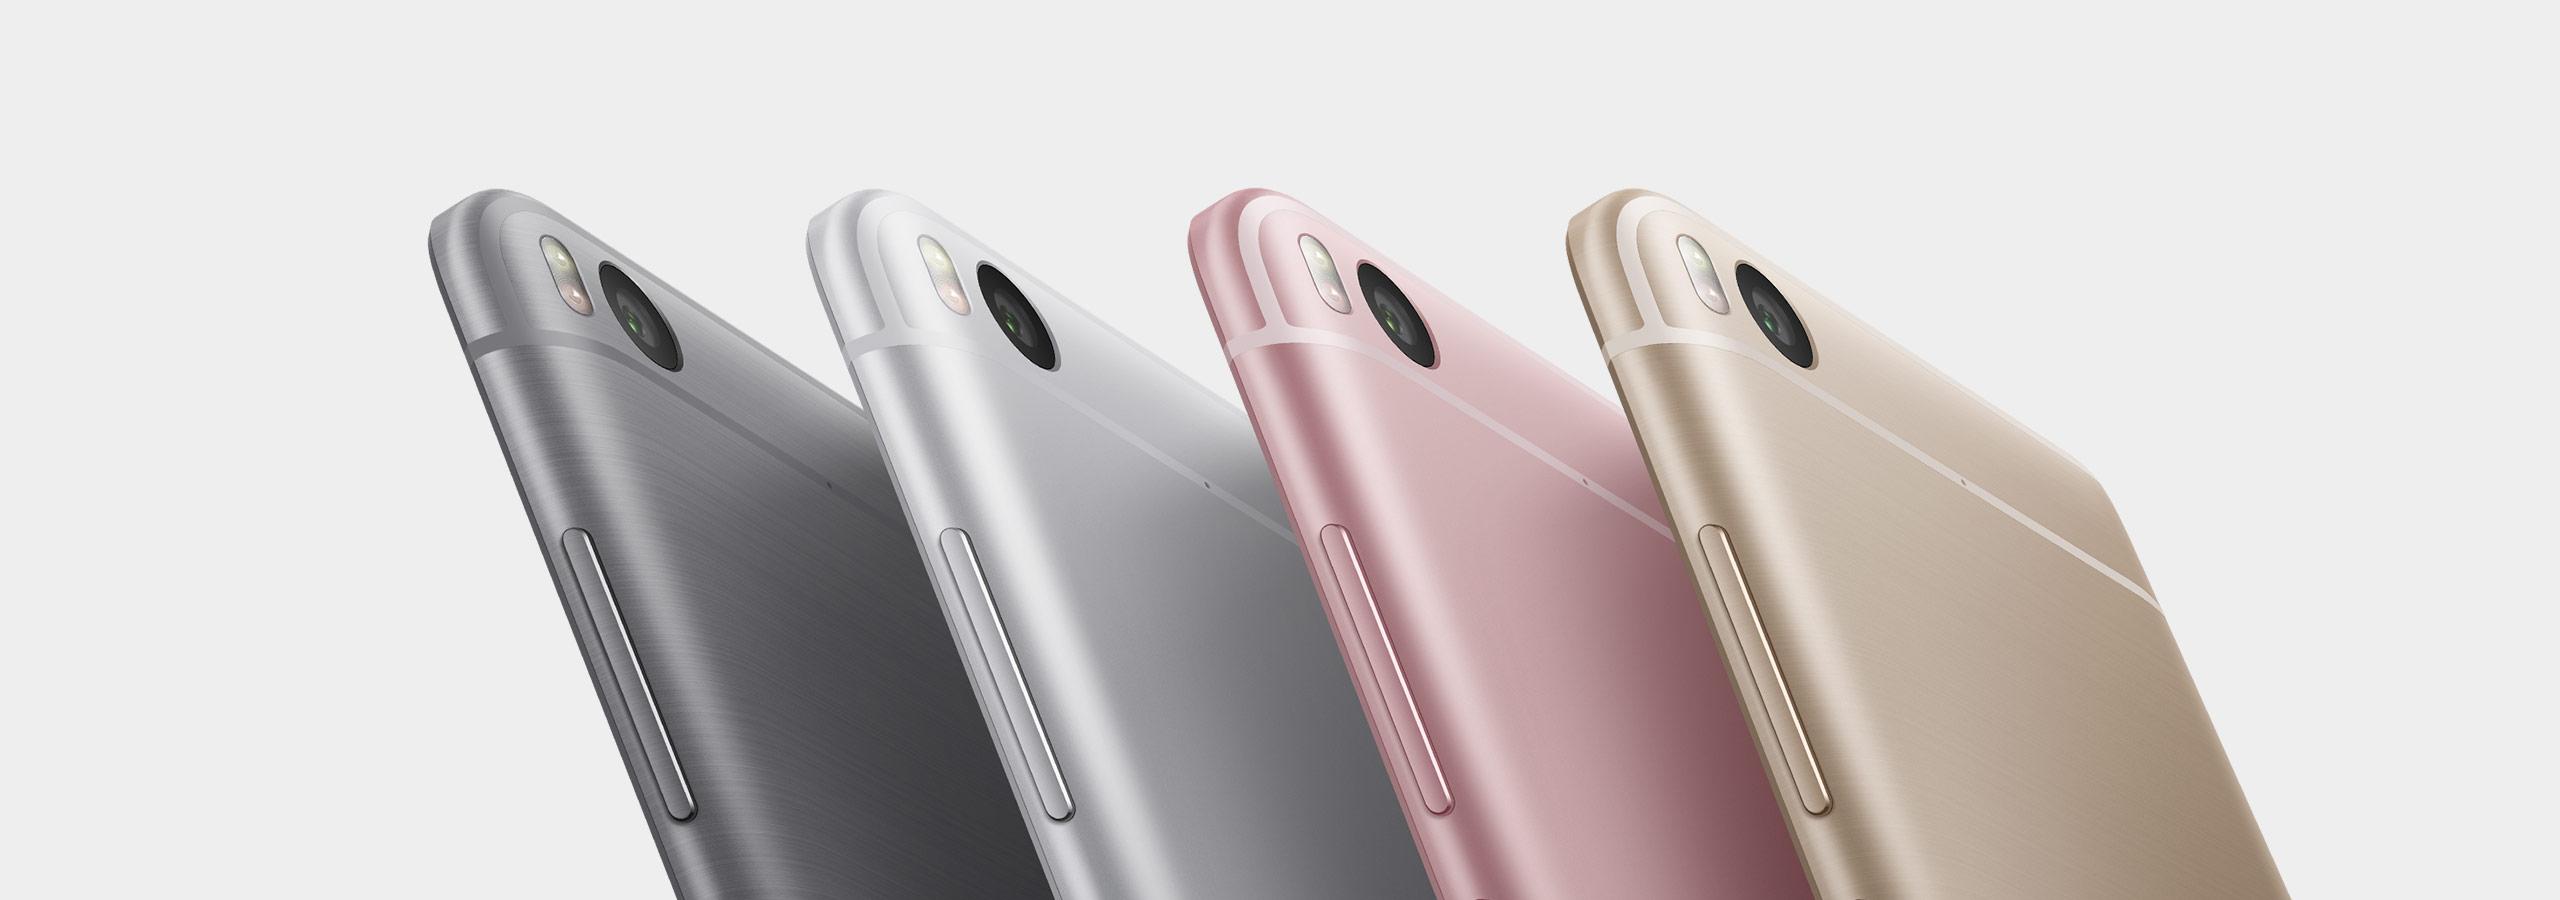 Xiaomi Mi 5s en rosa, plata, gris y dorado